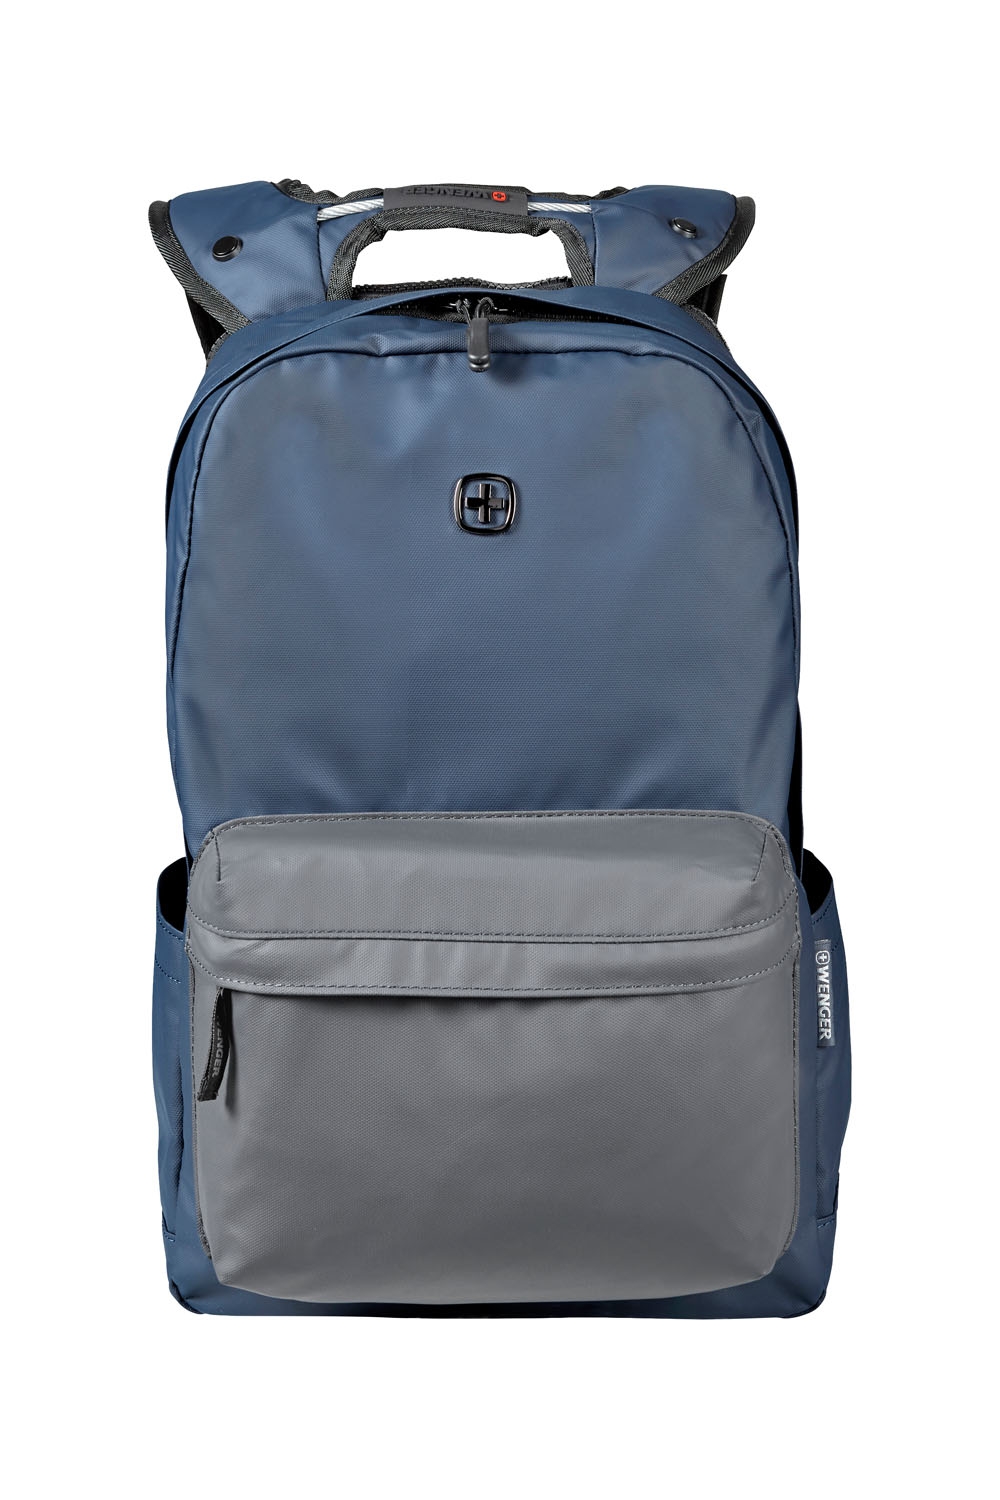 Рюкзак WENGER 14'', синий/серый, полиэстер, 28 x 22 x 41 см, 18 л, синий